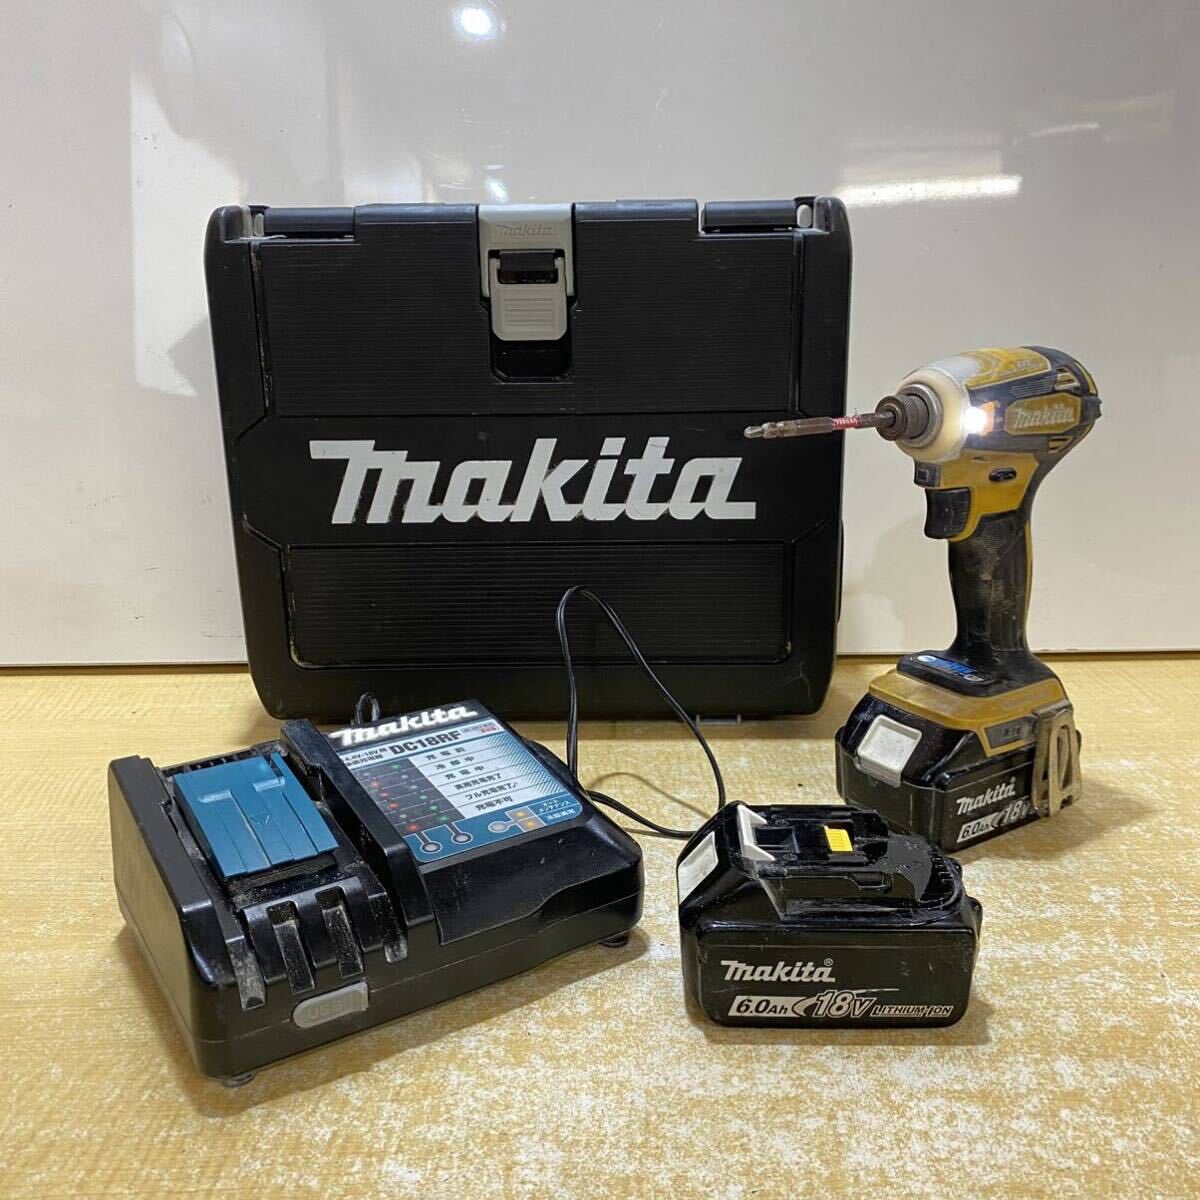 A♪ makita マキタ 充電式インパクトドライバ TD172DGX FY フラッシュイエロー 18V 6.0Ah バッテリ2個/充電器/ケース付 動作確認済の画像1